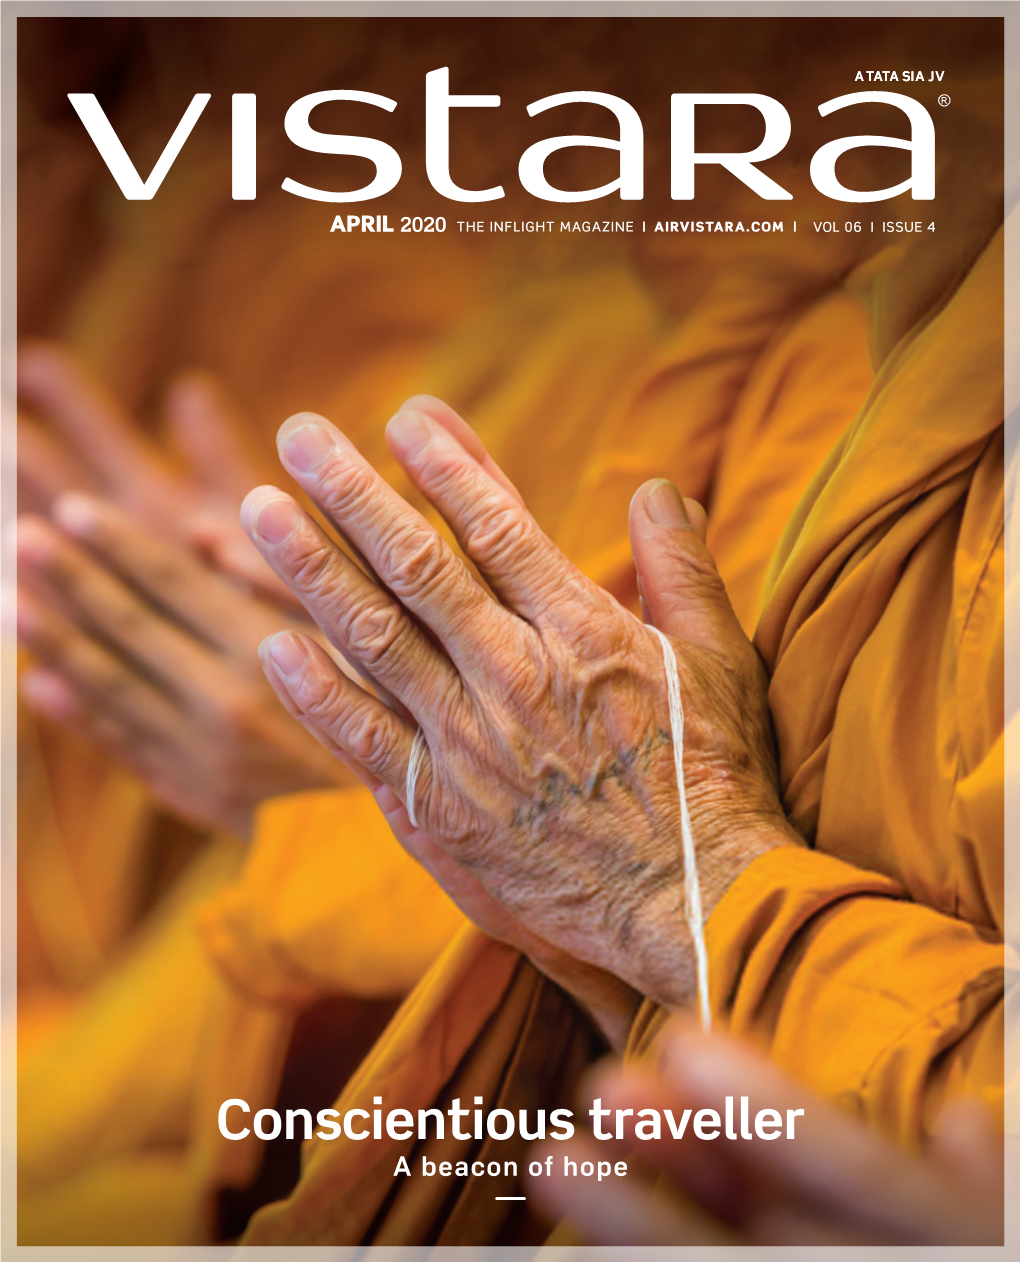 Conscientious Traveller a Beacon of Hope Vistara Experience